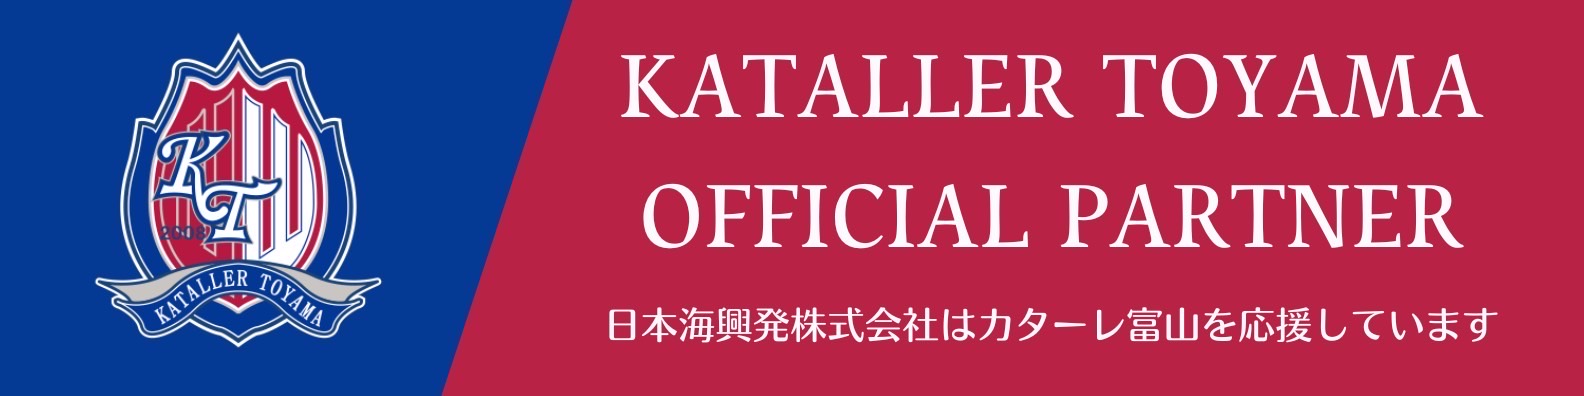 日本海興発株式会社はカターレ富山を応援しています